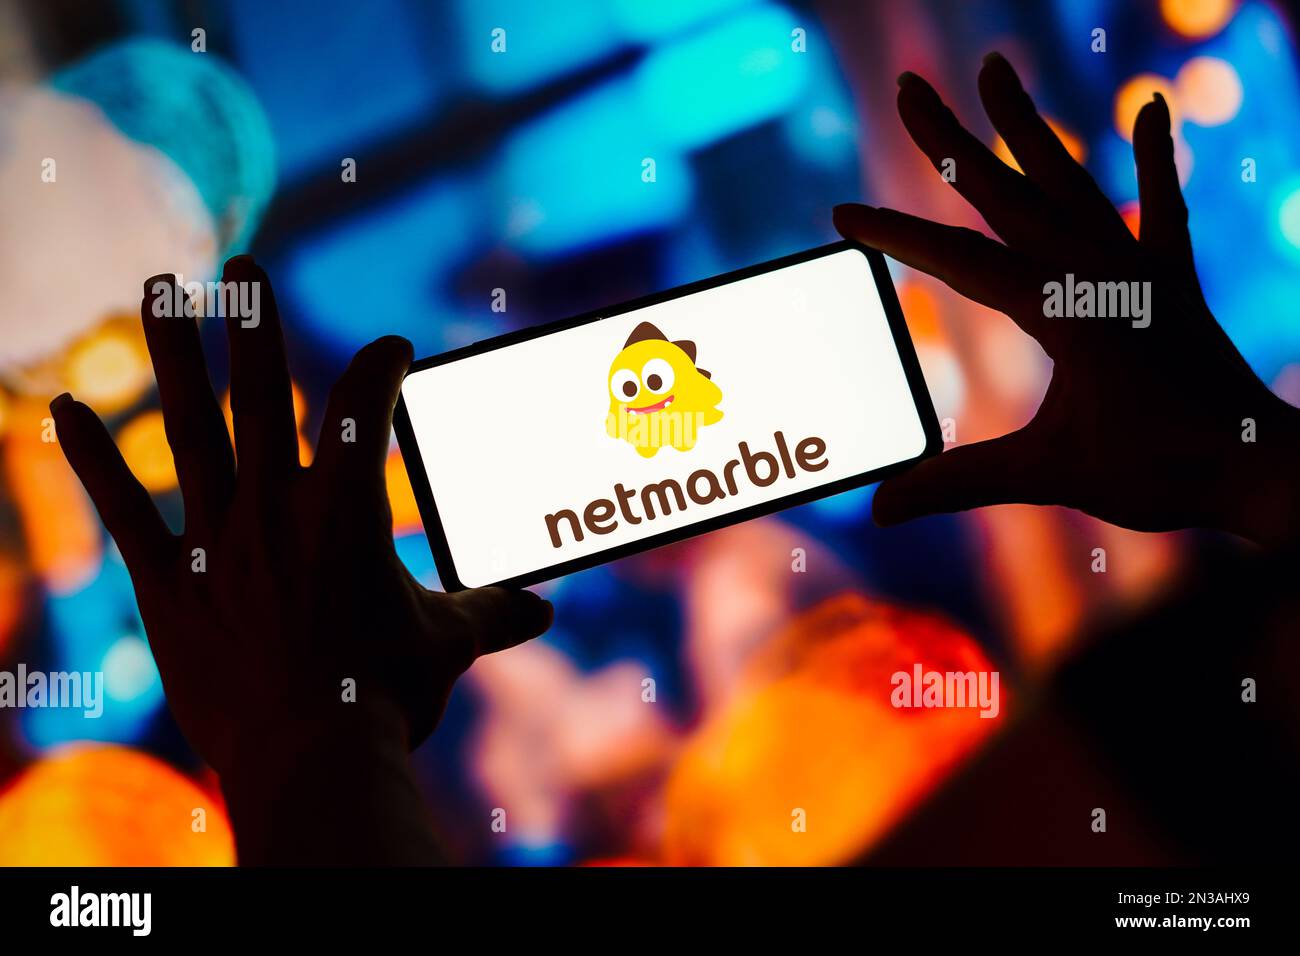 In questa illustrazione, il logo Netmarmoral viene visualizzato sullo schermo di uno smartphone. Foto Stock